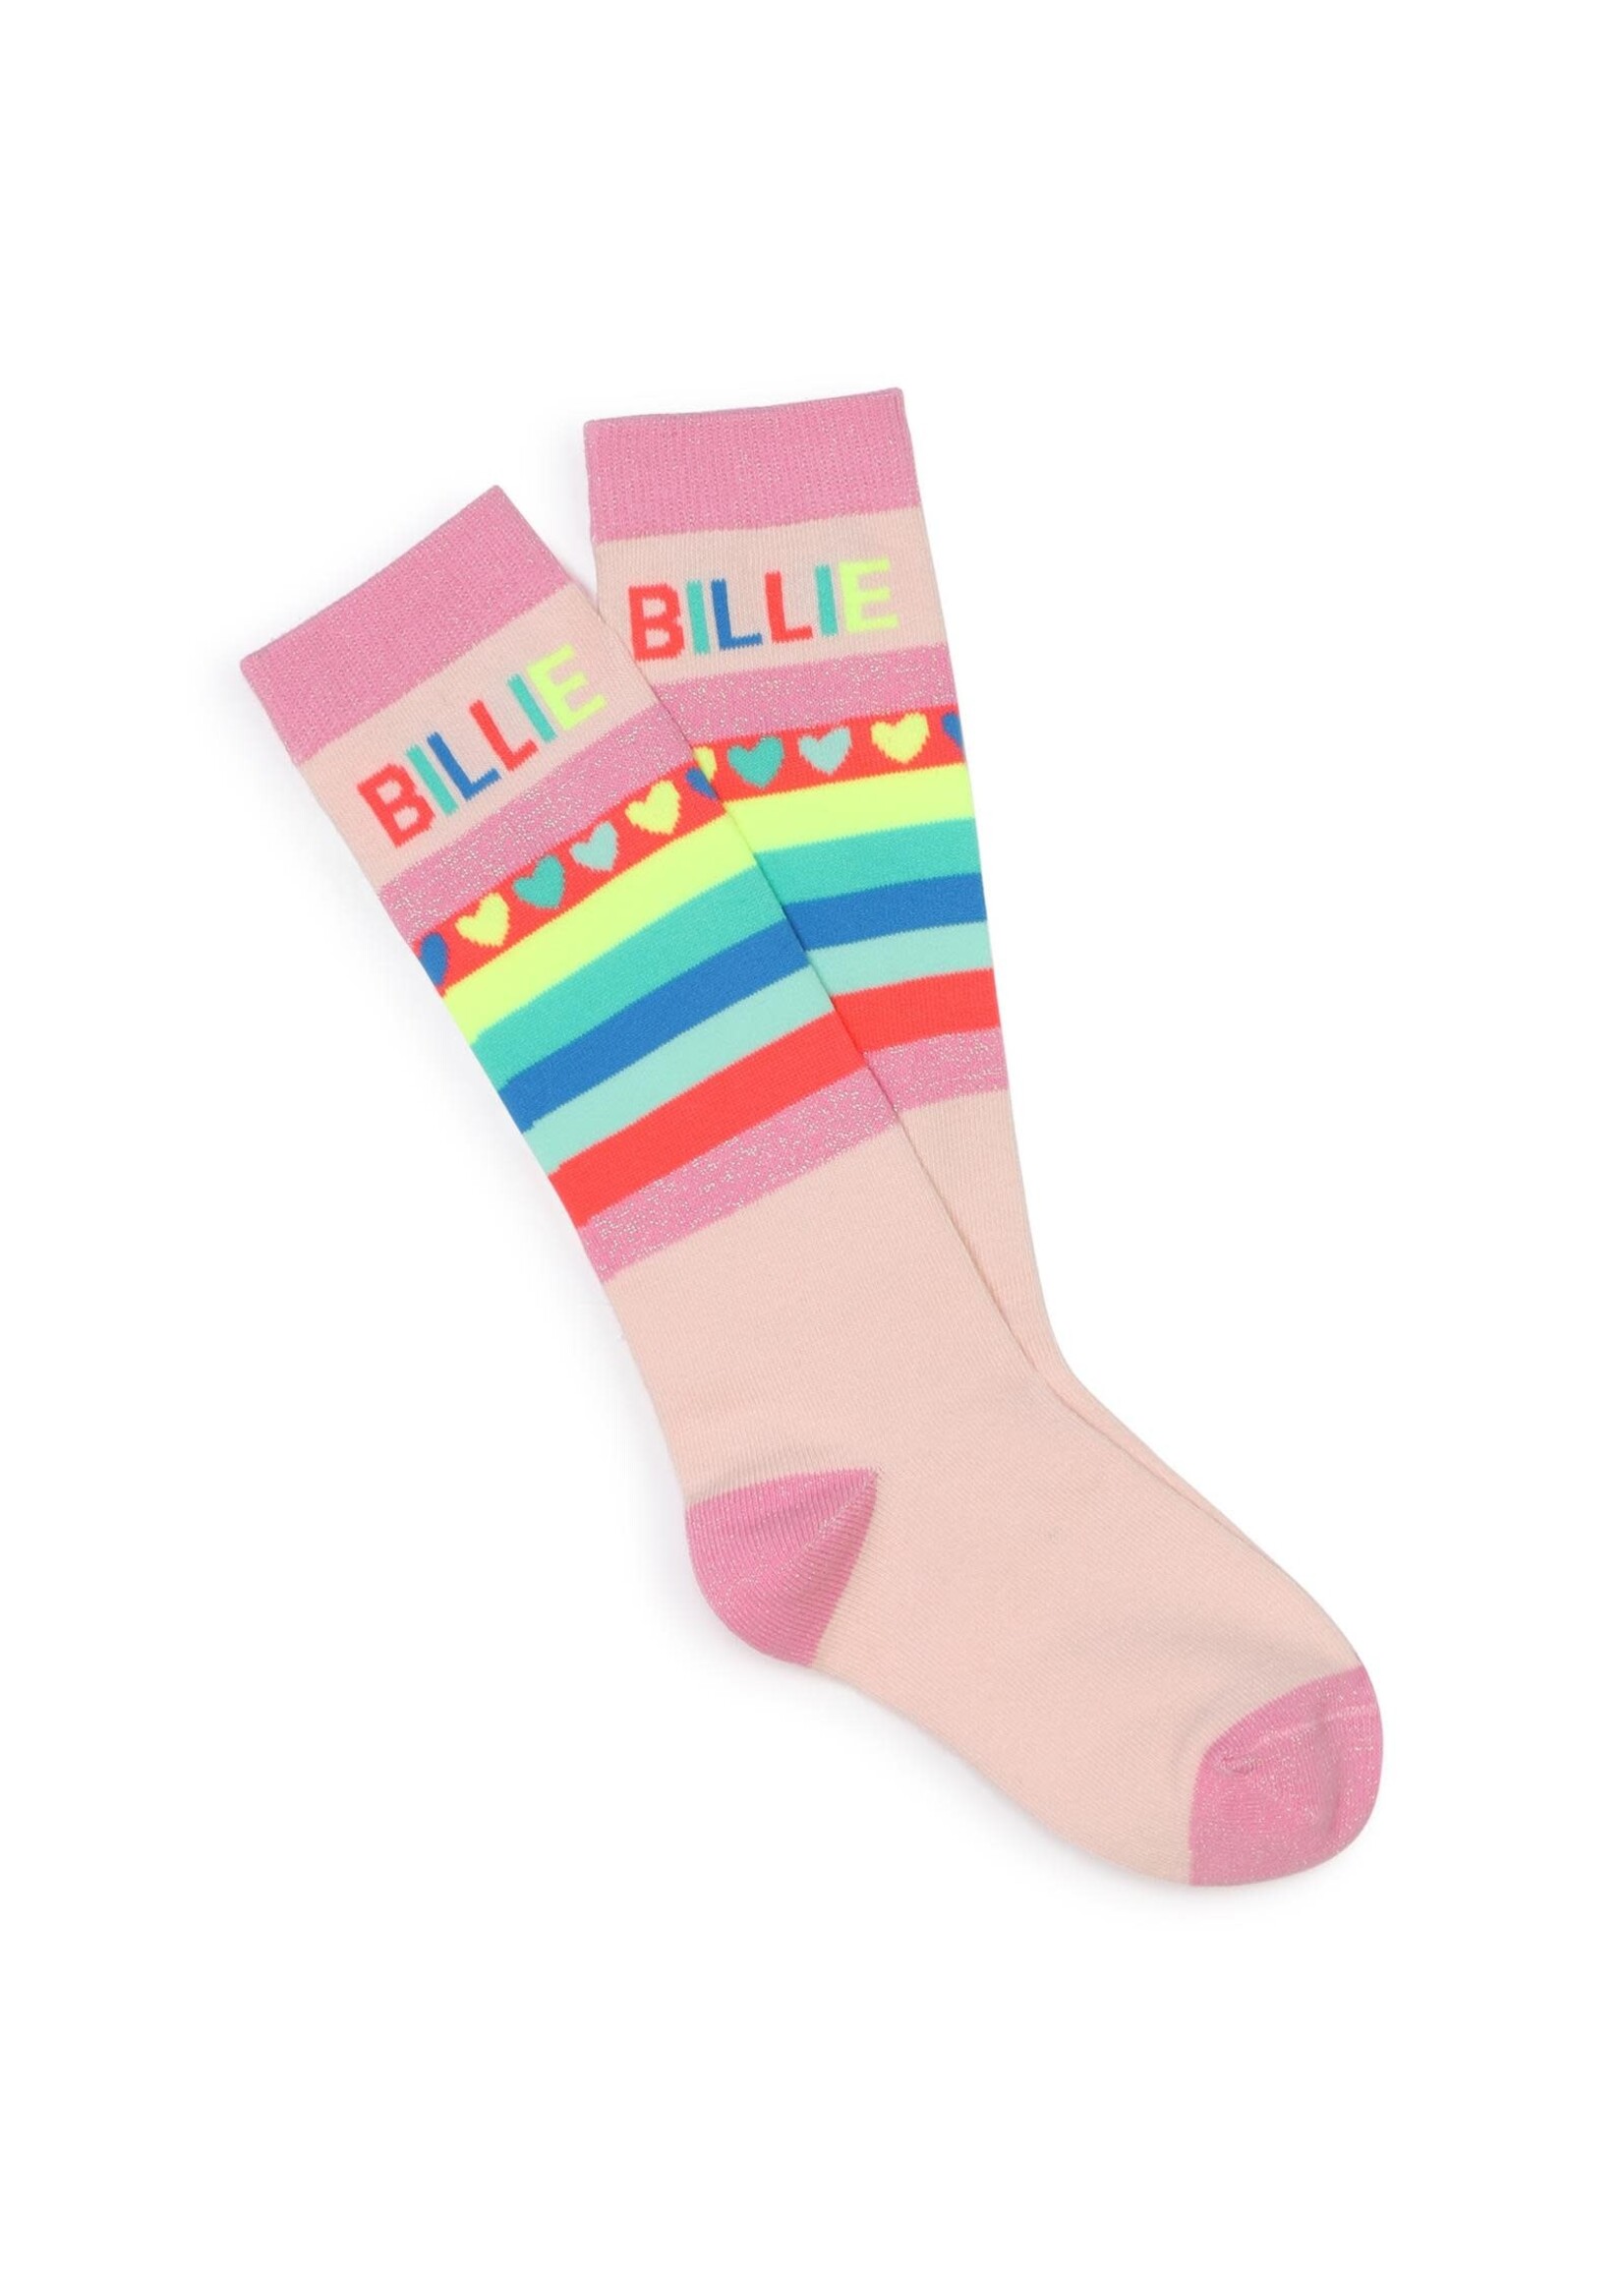 Billie Blush Knee Socks Billie